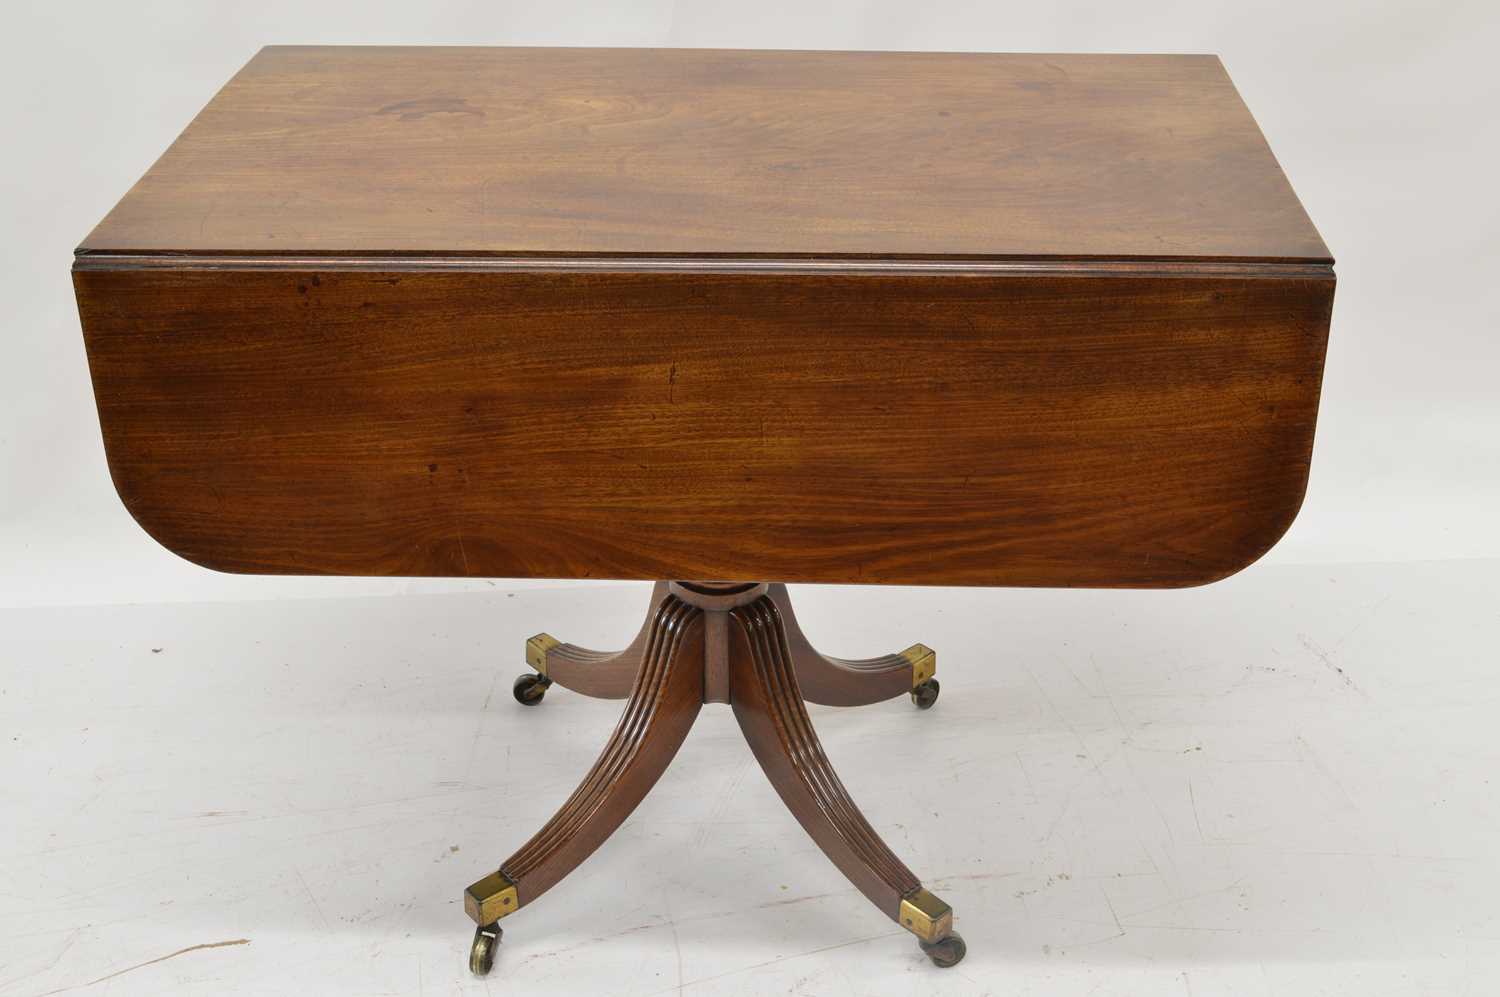 Early 19th-century Mahogany Pembroke Table - Image 2 of 6